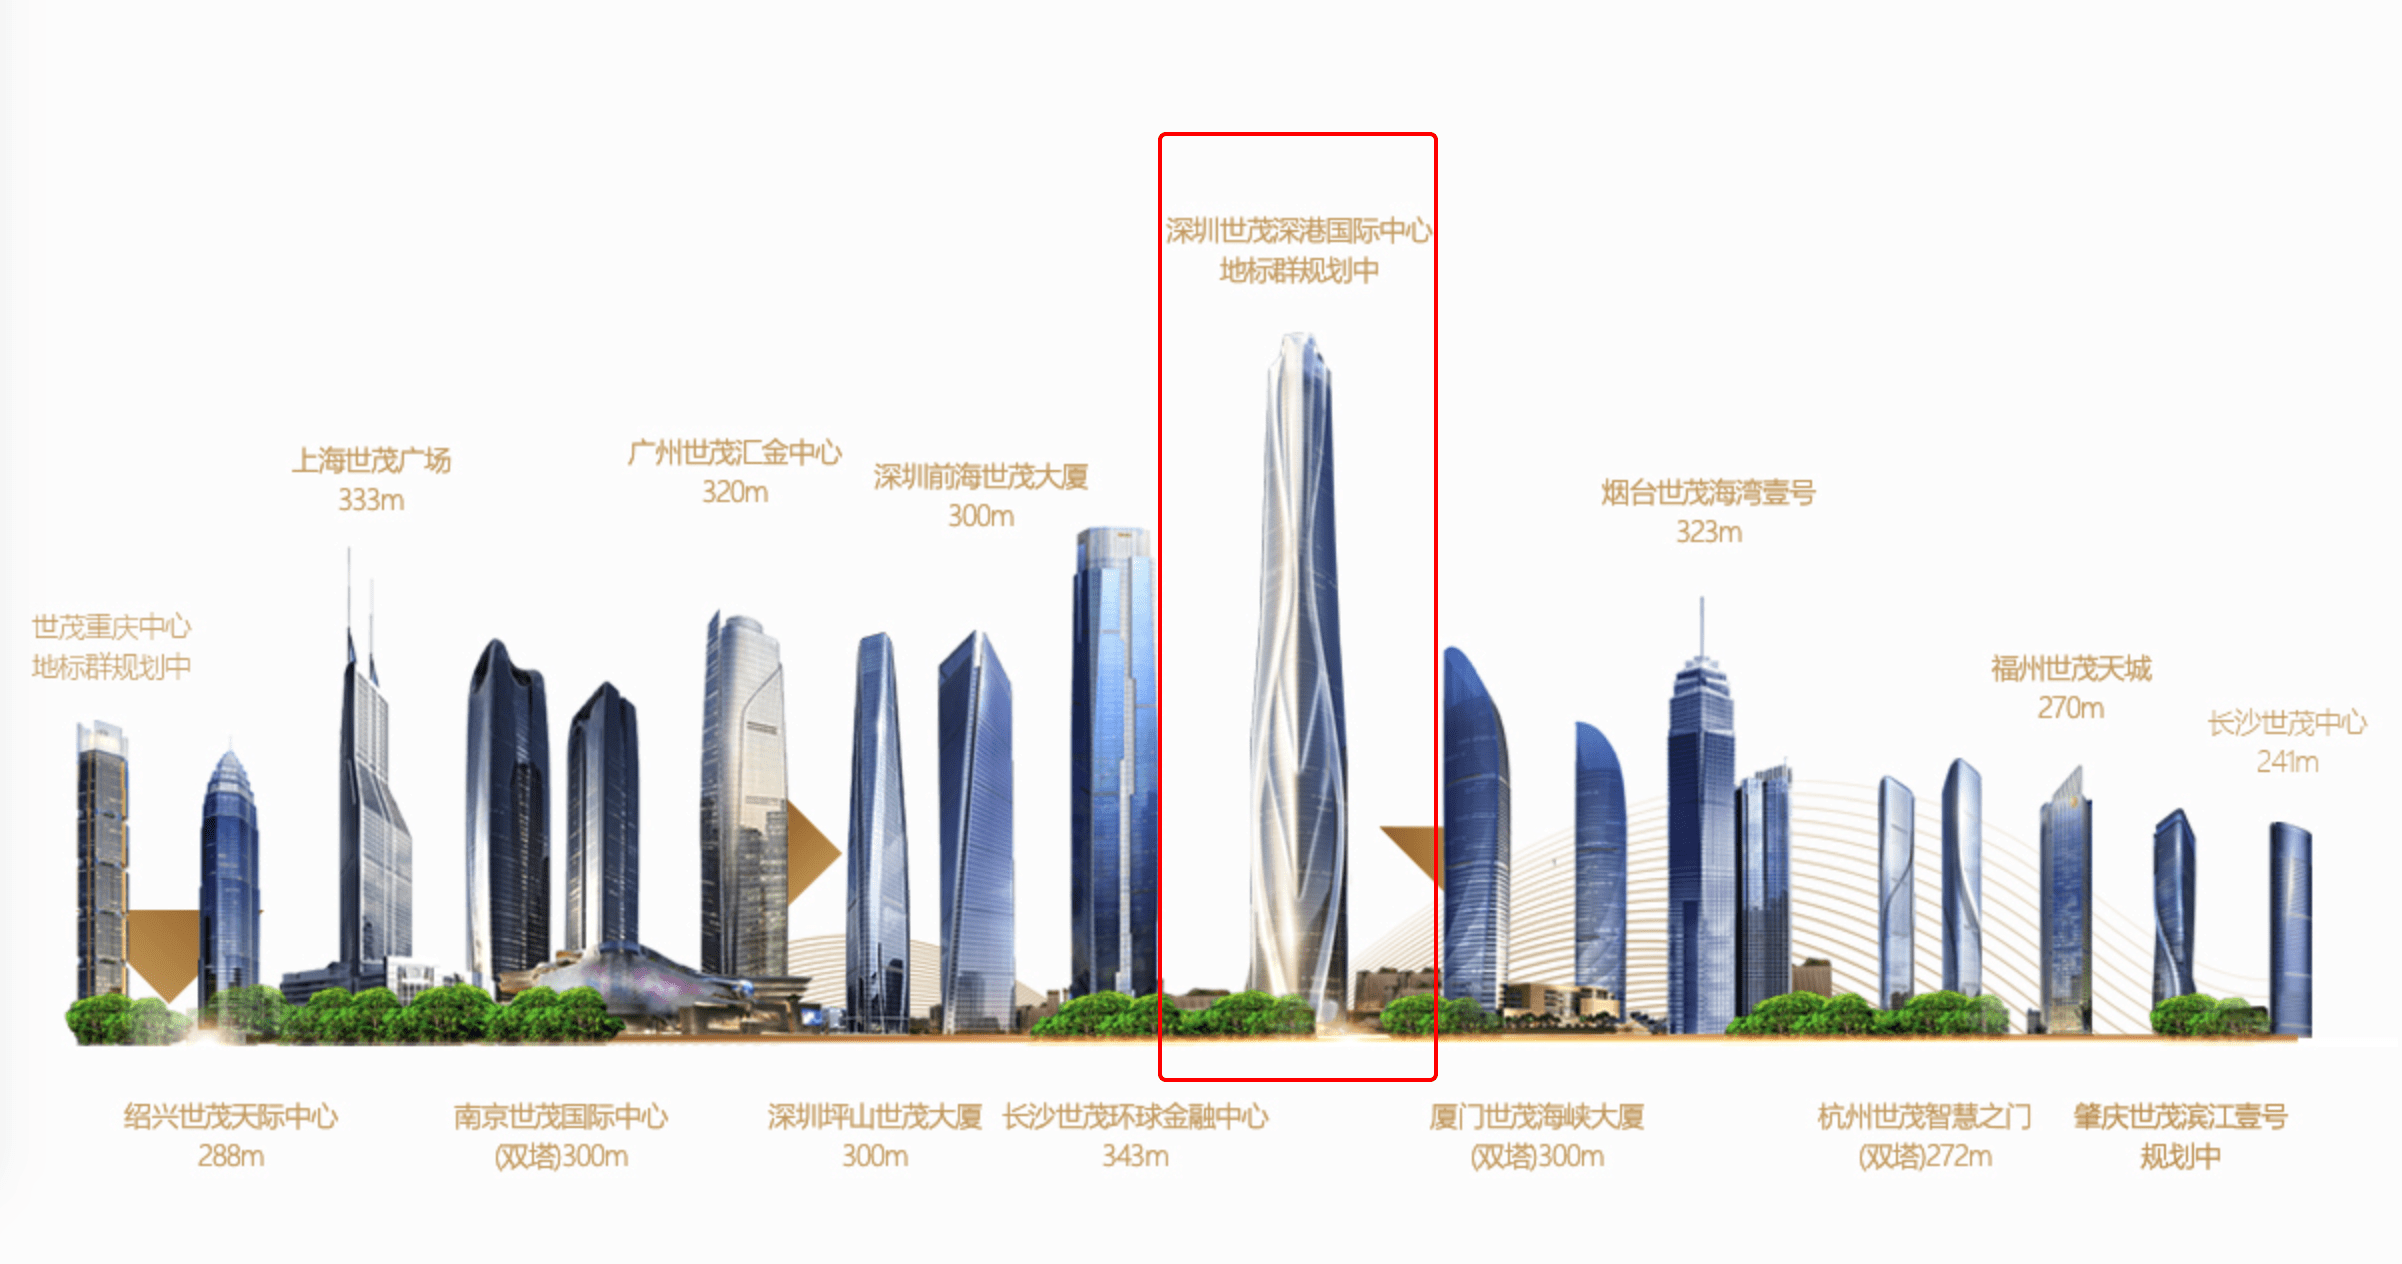 报价151亿龙岗600米高楼世茂深港国际中心寻找买家深圳楼市早7条